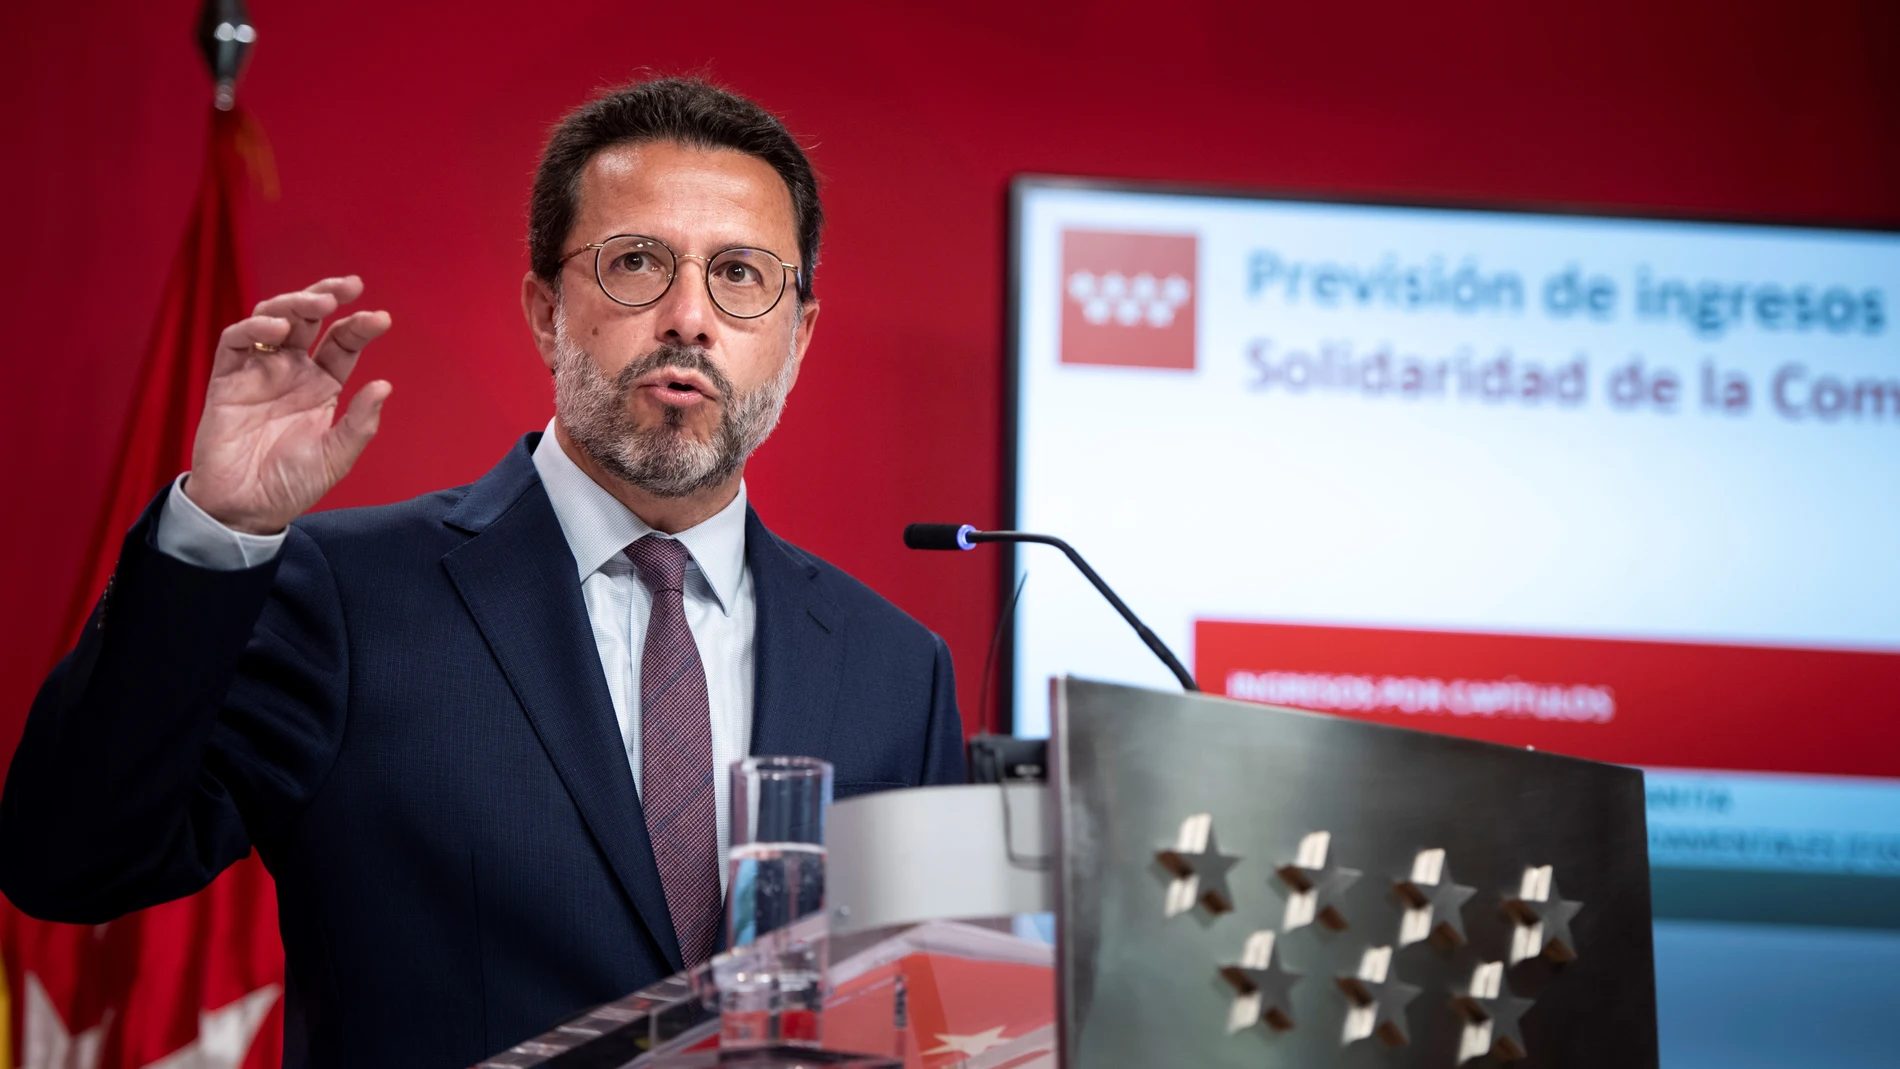 El consejero de Economía, Javier Fernández Lasquetty, durante la rueda de prensa para presentar el proyecto de presupuestos de la región del próximo año